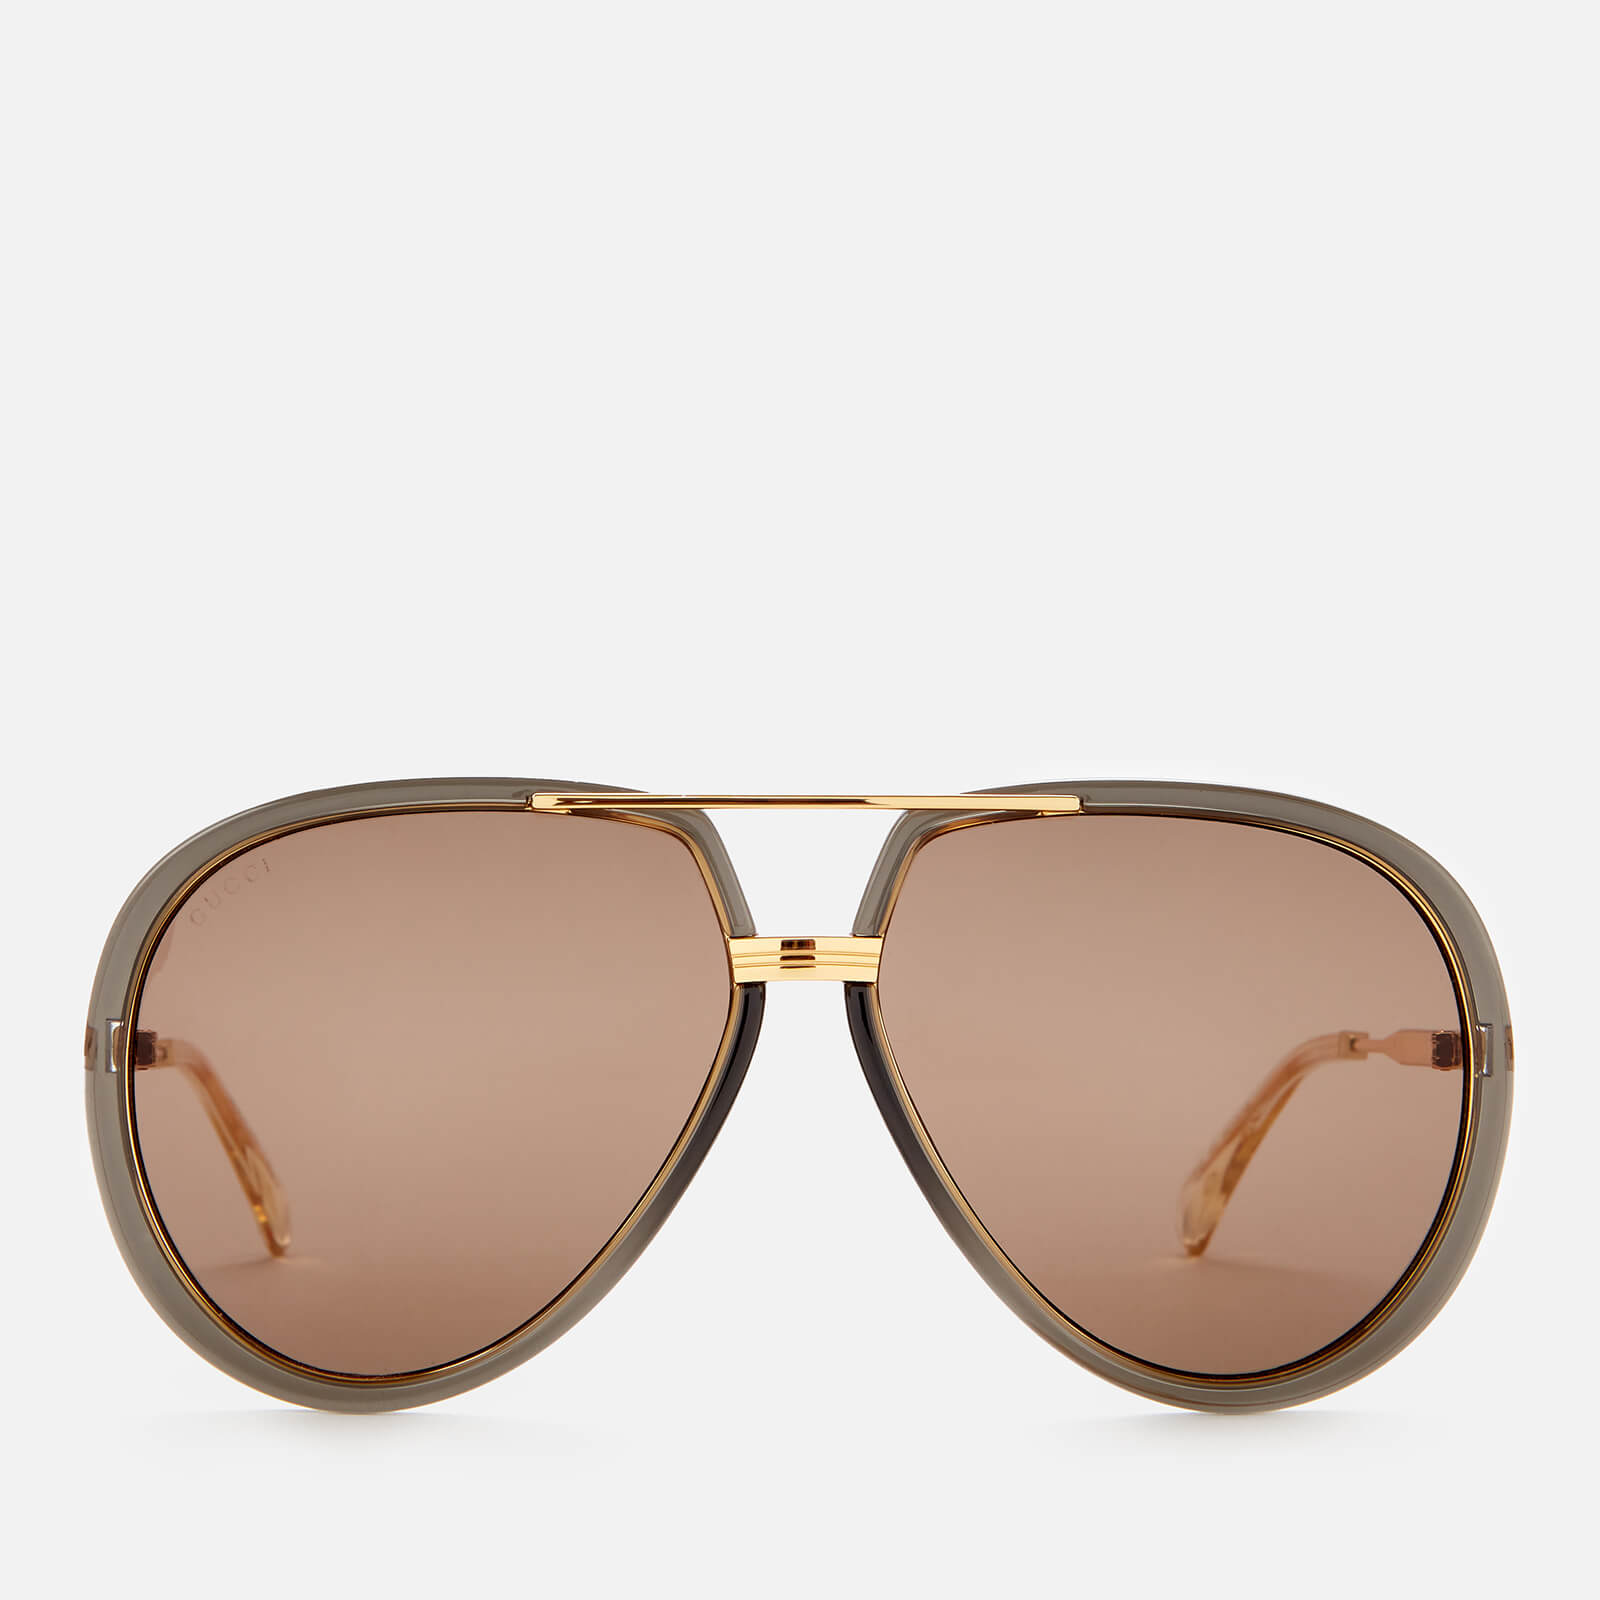 Gucci Men's Metal Sunglasses - Grey/Gold/Brown